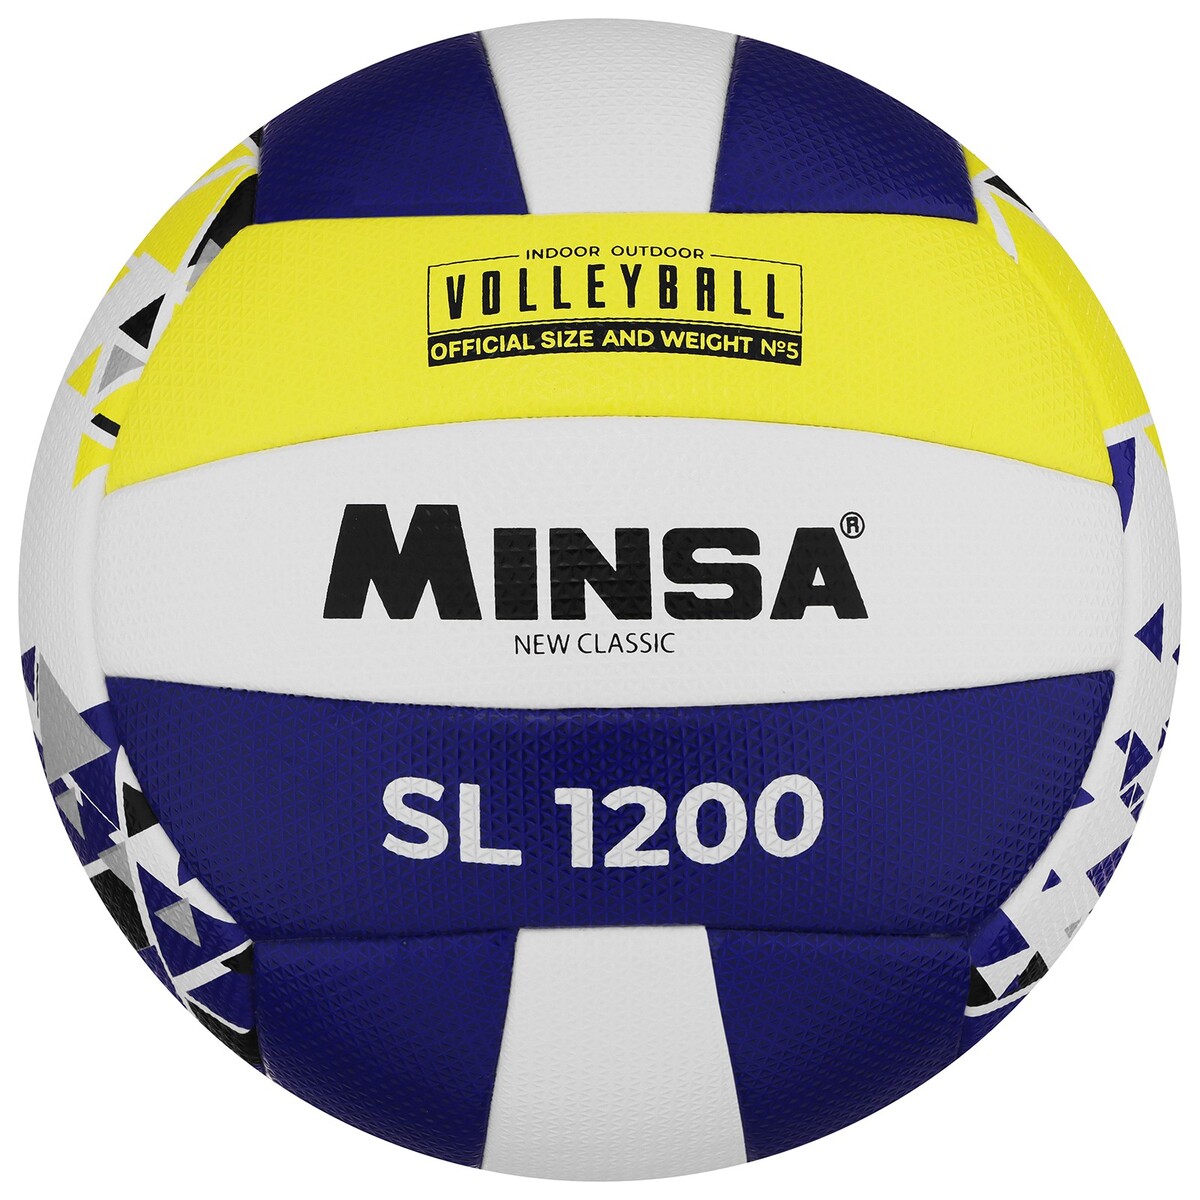 Мяч волейбольный minsa new classic sl1200, microfiber pu, клееный, размер 5 мяч волейбольный kelme 9806140 141 р 5 18 пан синт кожа пу клееный бело желто синий